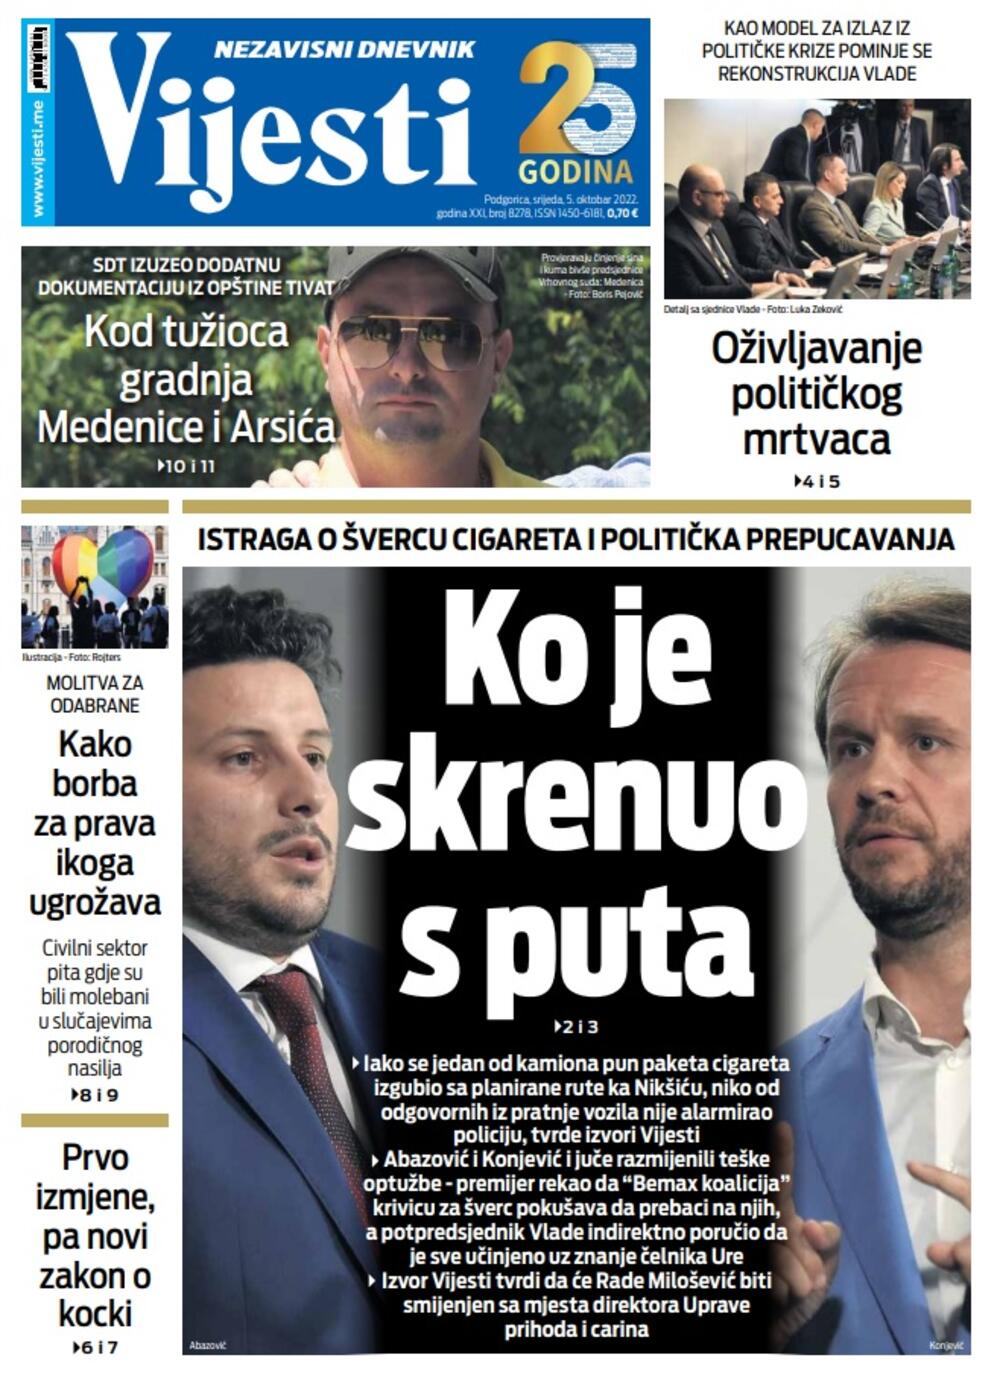 Naslovna strana "Vijesti" za srijedu 5. oktobar 2022., Foto: Vijesti